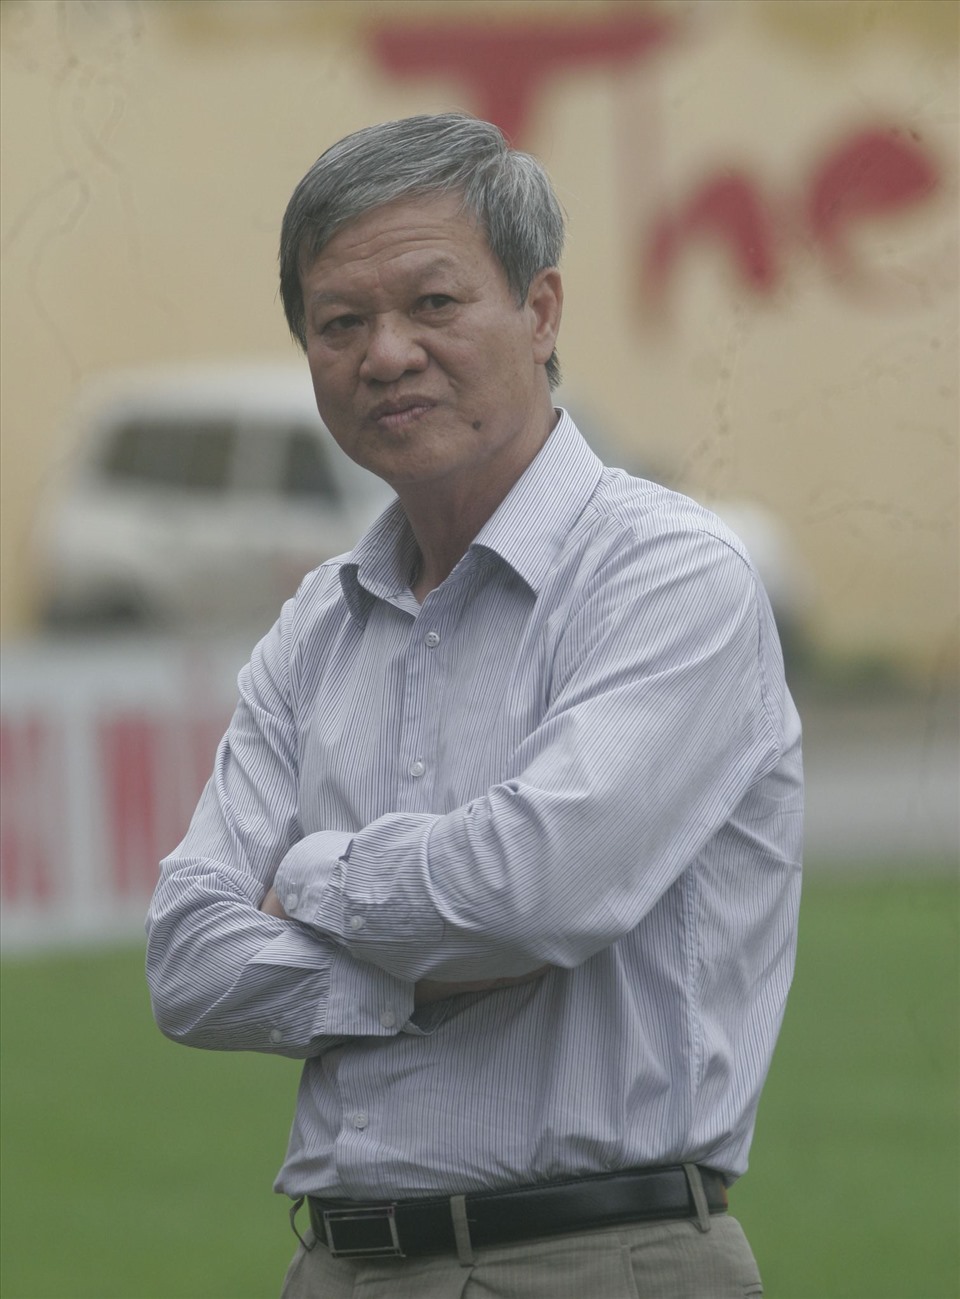 Năm 2018, người hâm mộ bóng đá Việt Nam đã bất ngờ khi biết tin huấn luyện viên Lê Thụy Hải phát hiện mắc bệnh ung thư tuyến tuỵ. Sau thời gian dài chiến đấu với bệnh hiểm nghèo, cựu danh thủ này trút hơi thở cuối cùng vào trưa 7.5.2021.